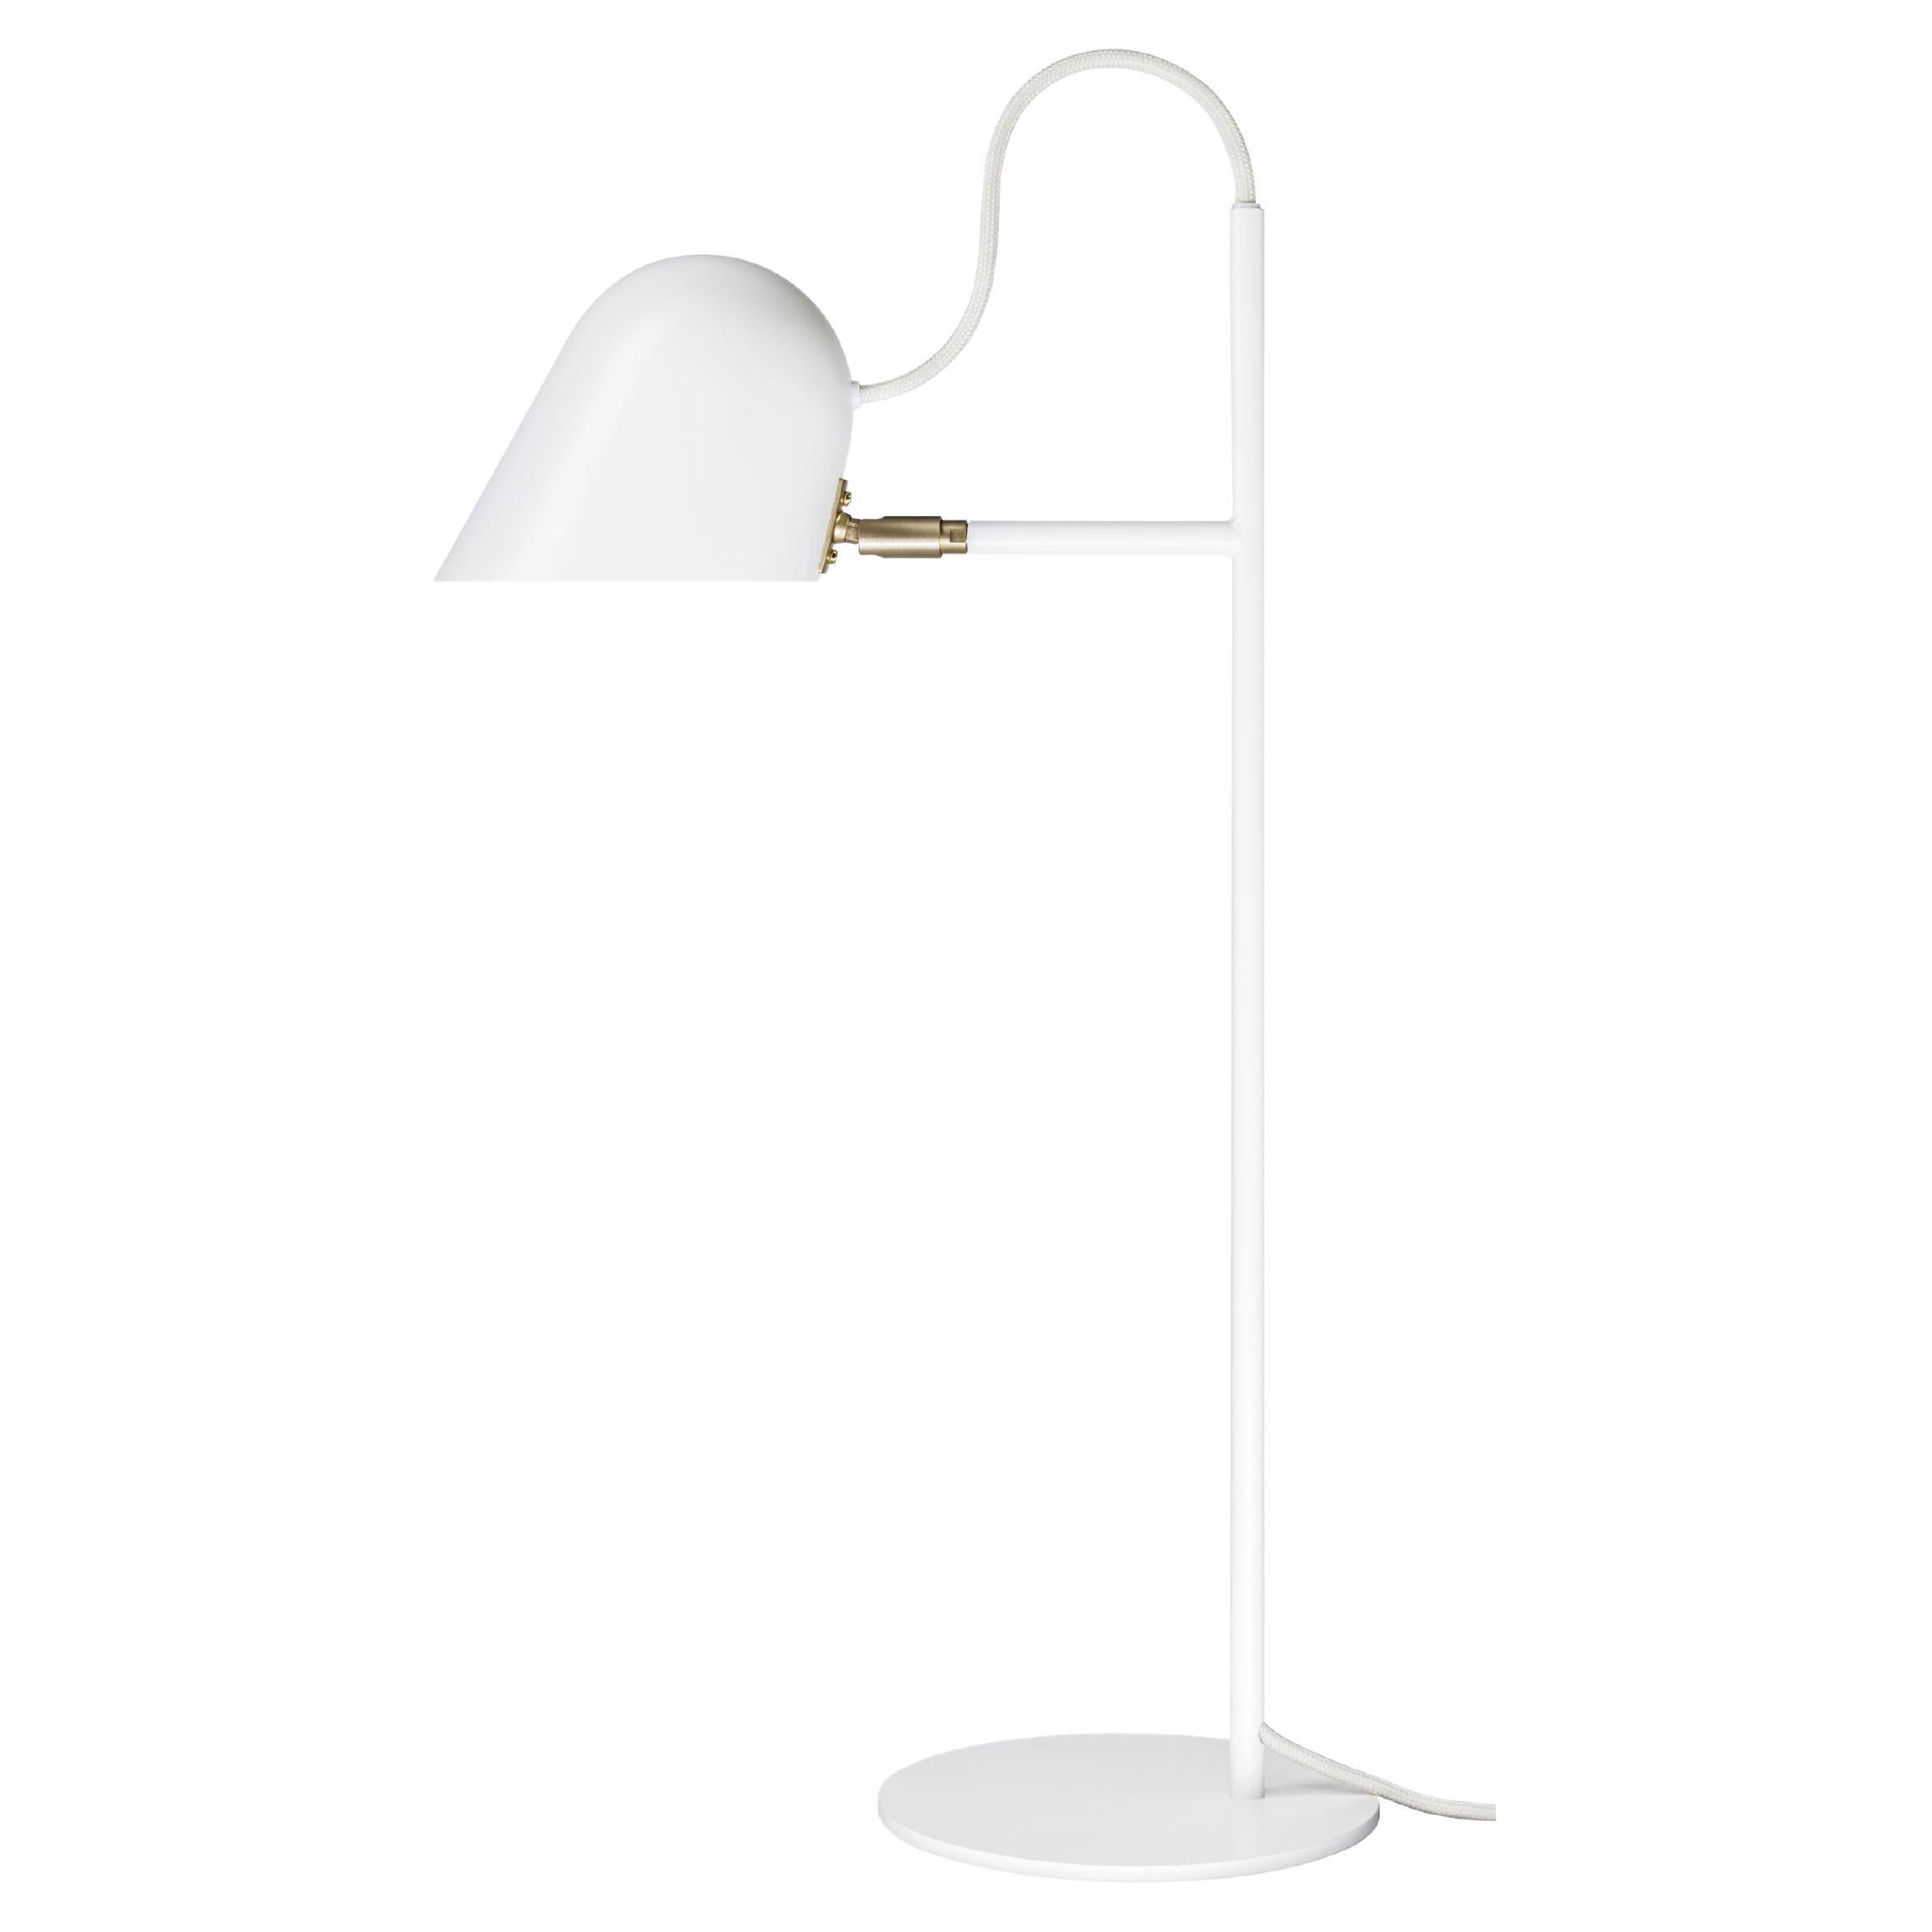 'Streck' Table Lamp by Joel Karlsson for Örsjö in White